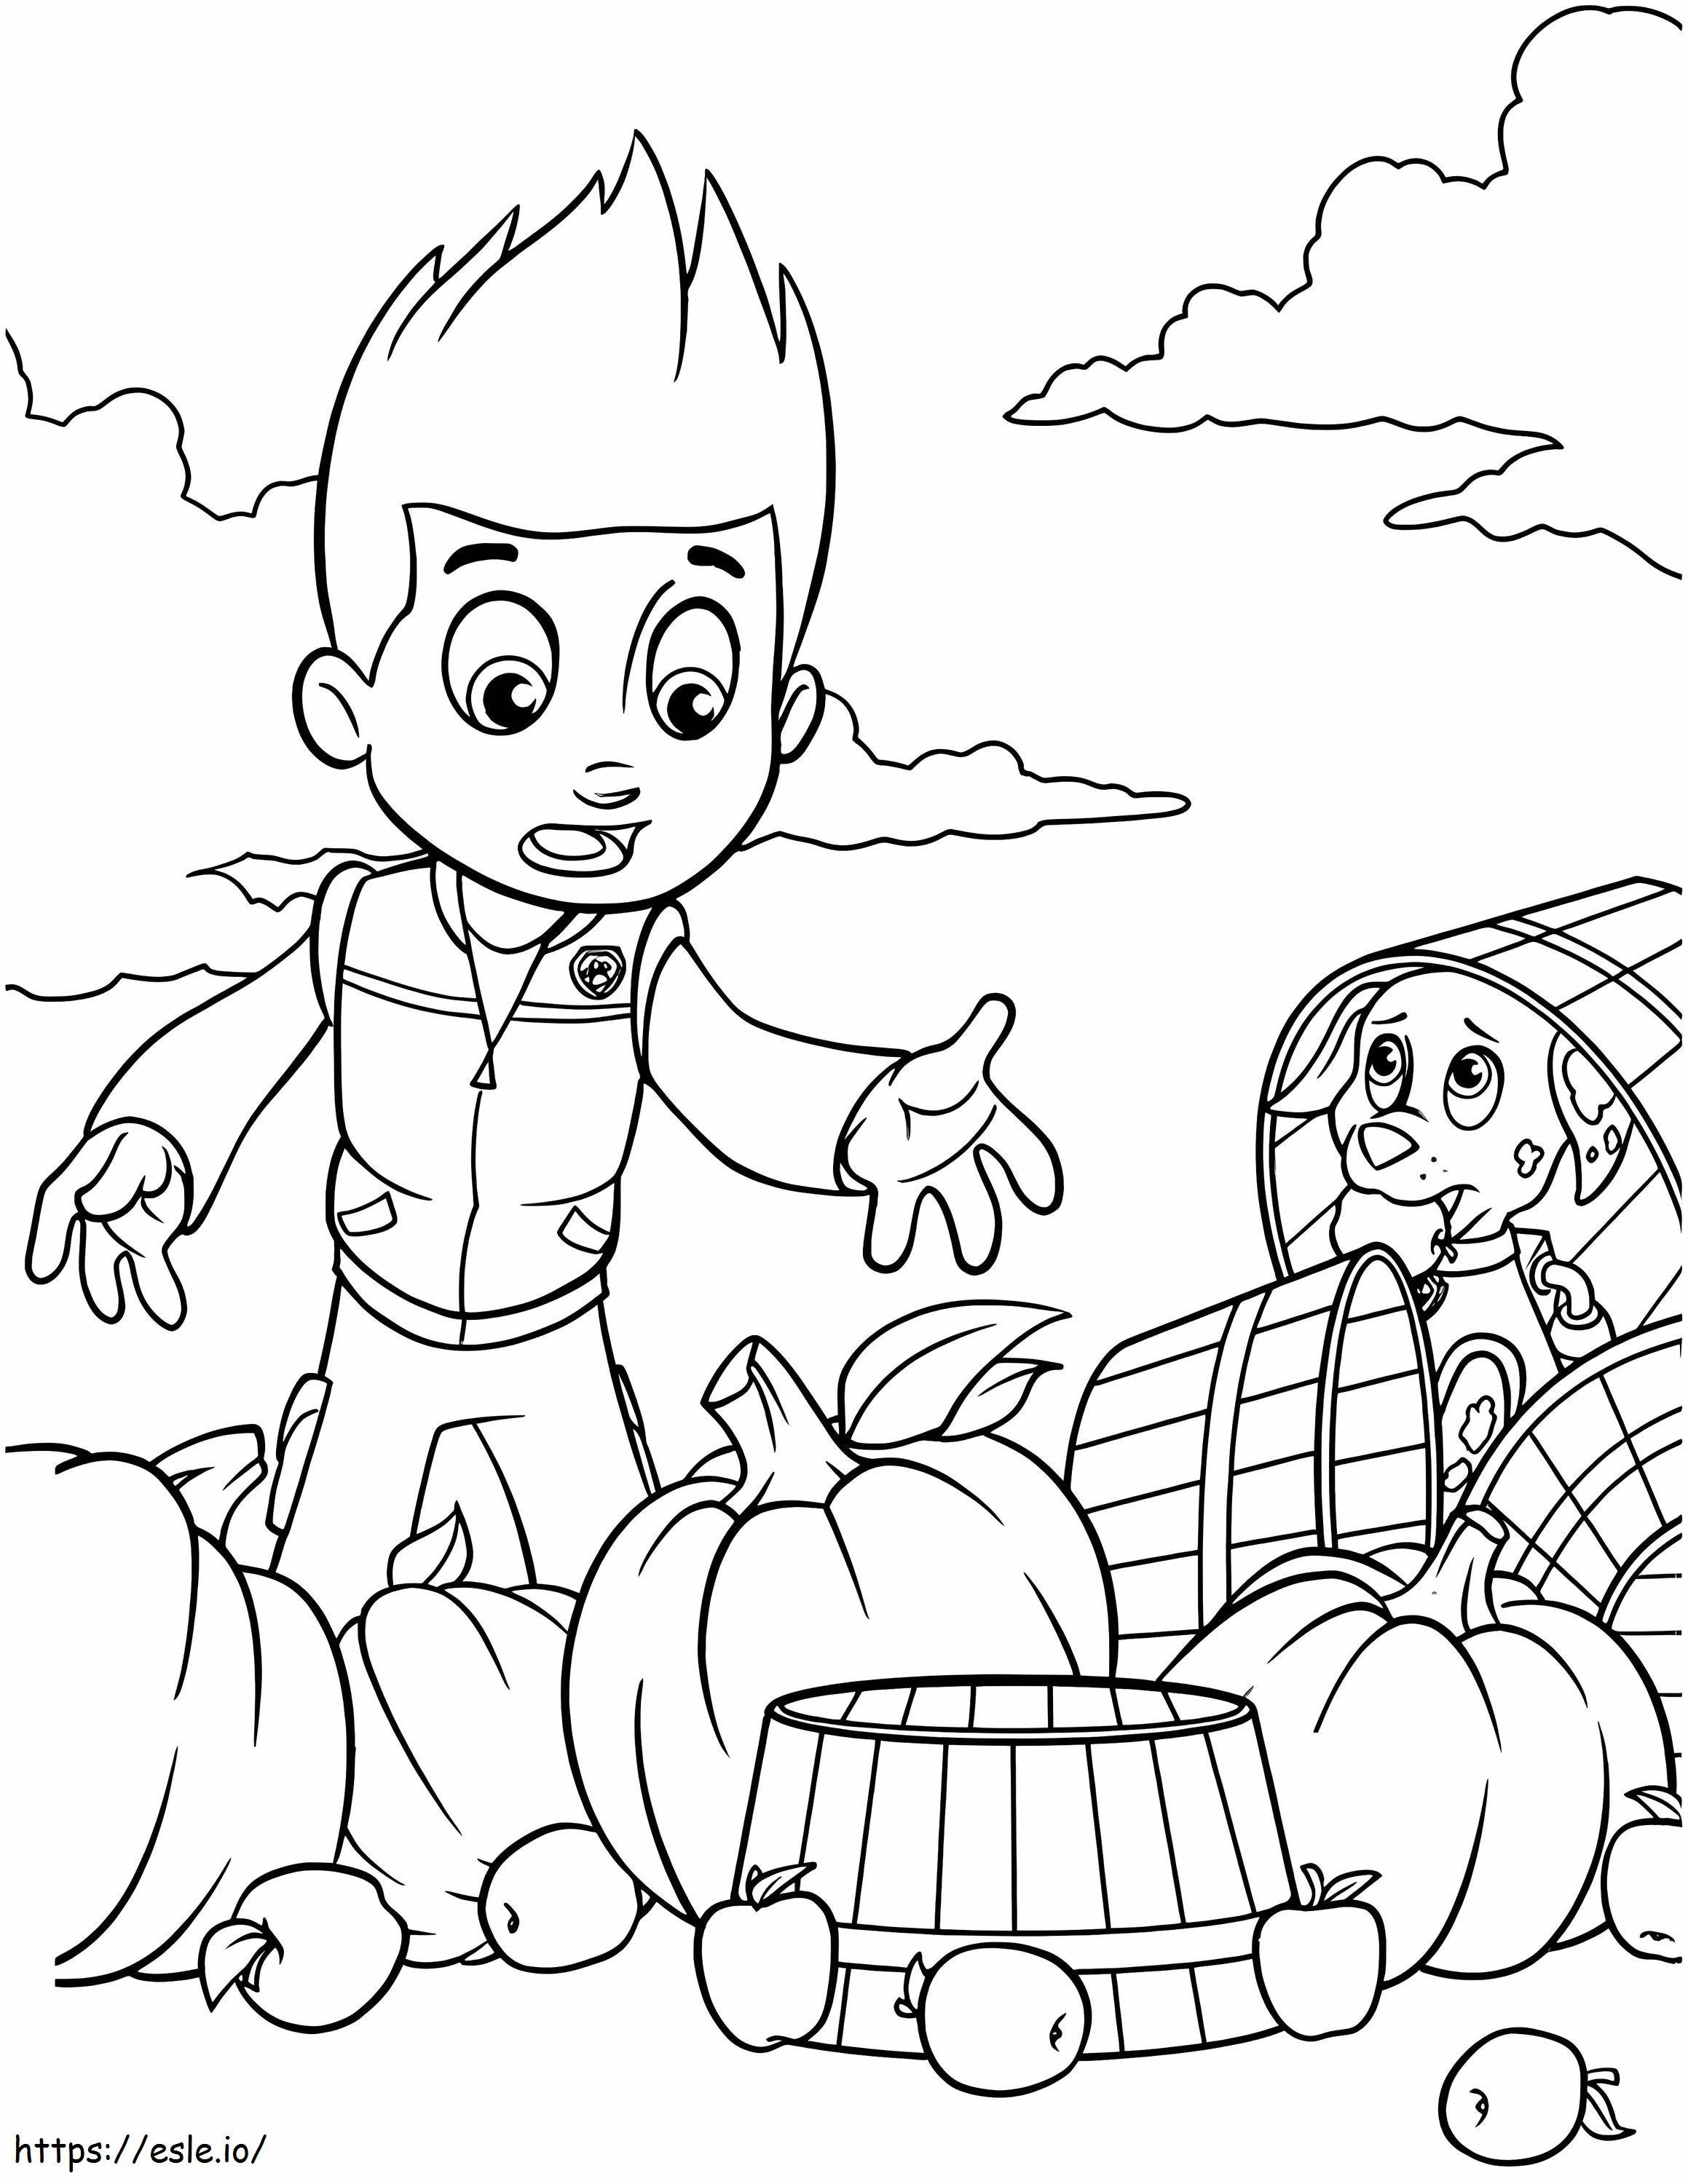 Ryder Harvests Pumpkin coloring page